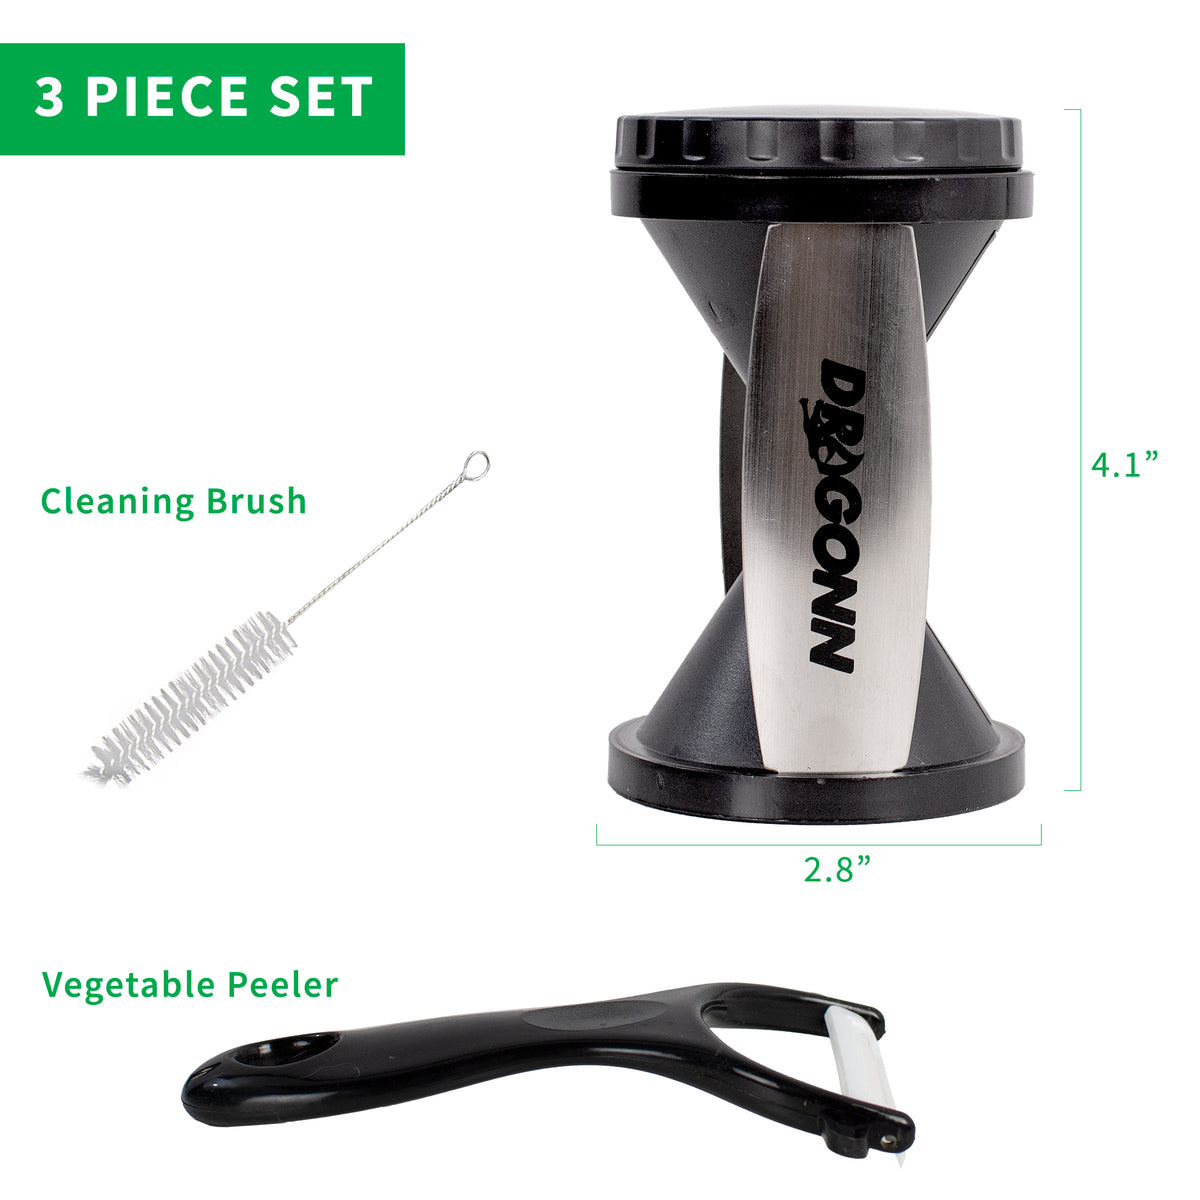 Spiral vegetable slicer - DVINA online shopping for household